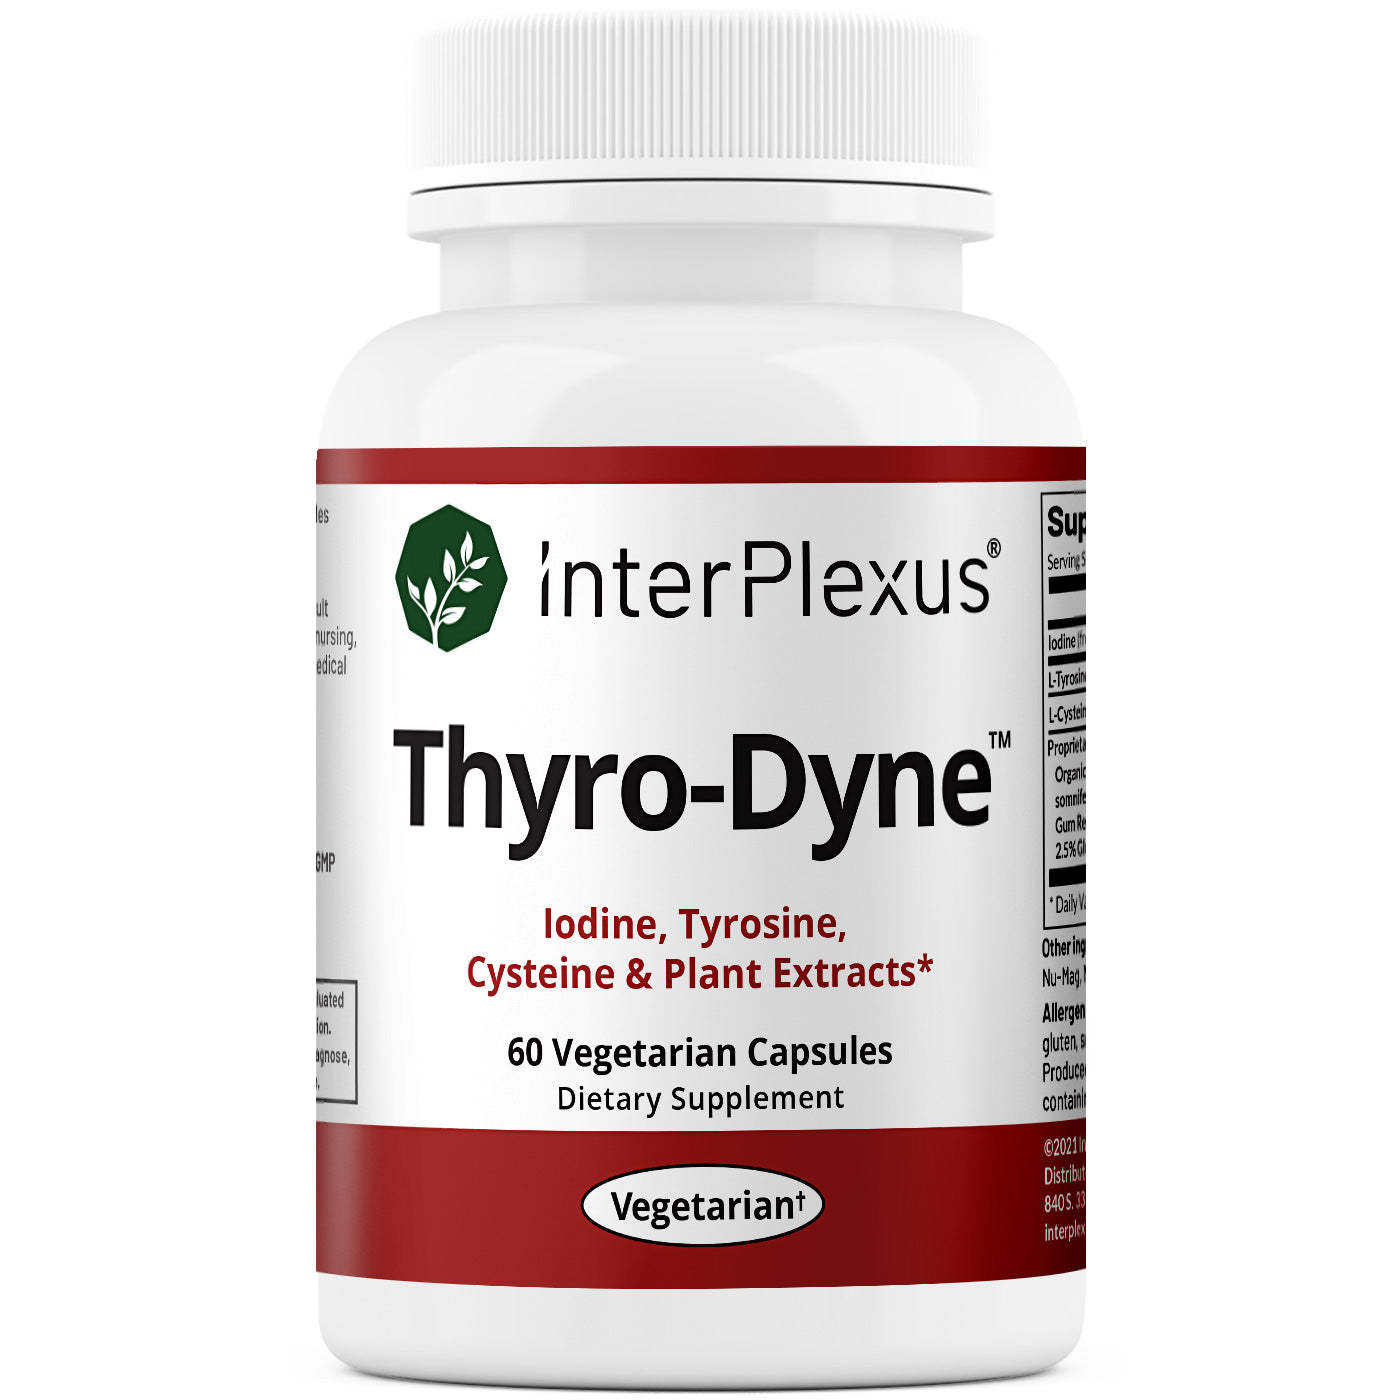 Thyro-Dyne Main Label | Iodine, Tyrosine, Cysteine & Plant Extracts